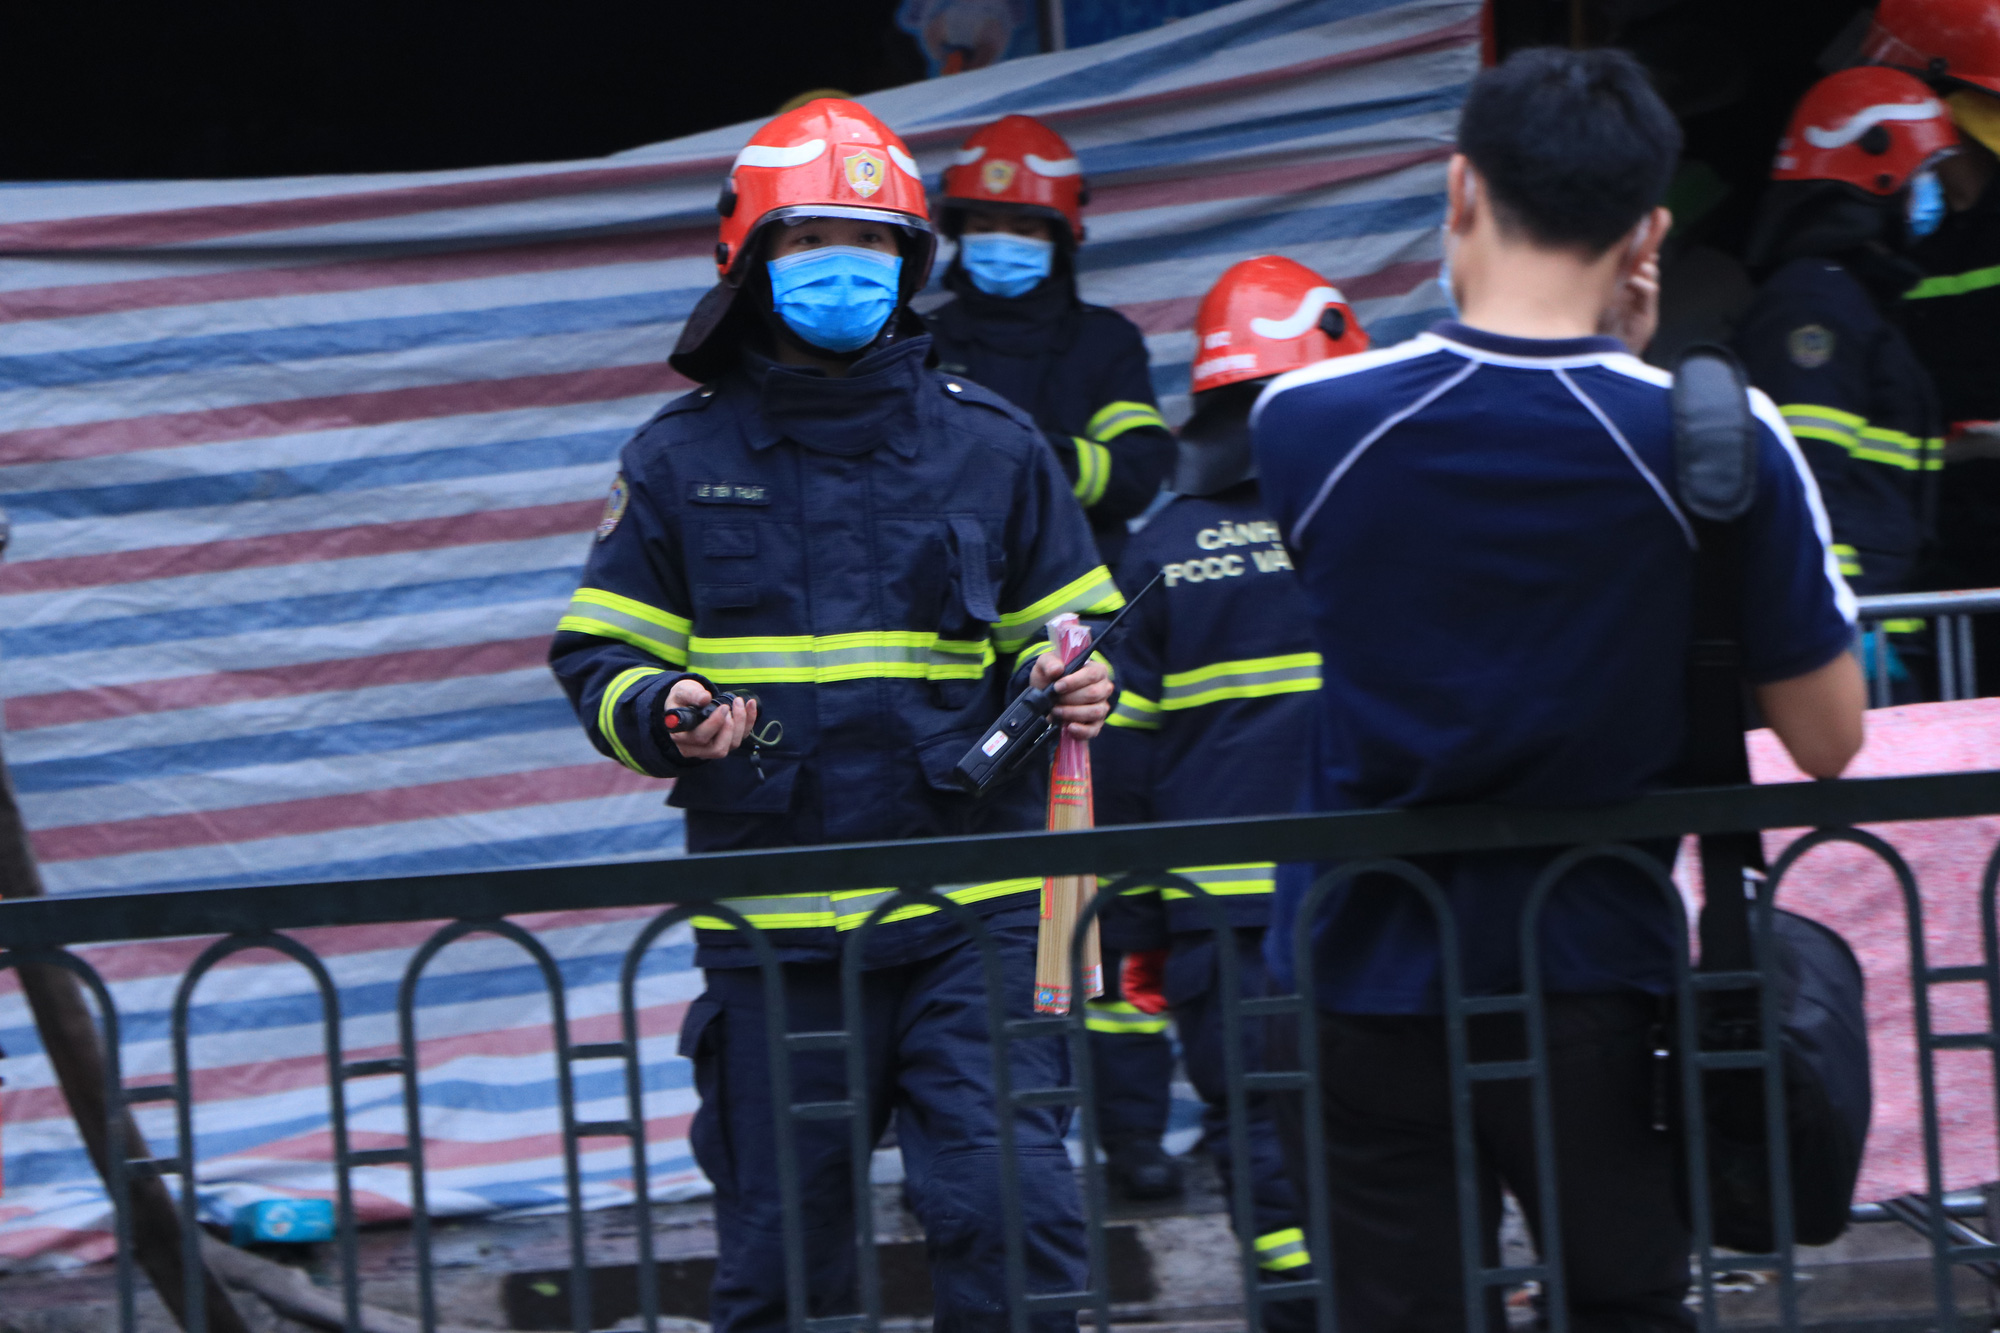  Hiện trường vụ cháy cửa hàng đường Tôn Đức Thắng, nhiều người cùng gia đình nghi mắc kẹt - Ảnh 3.